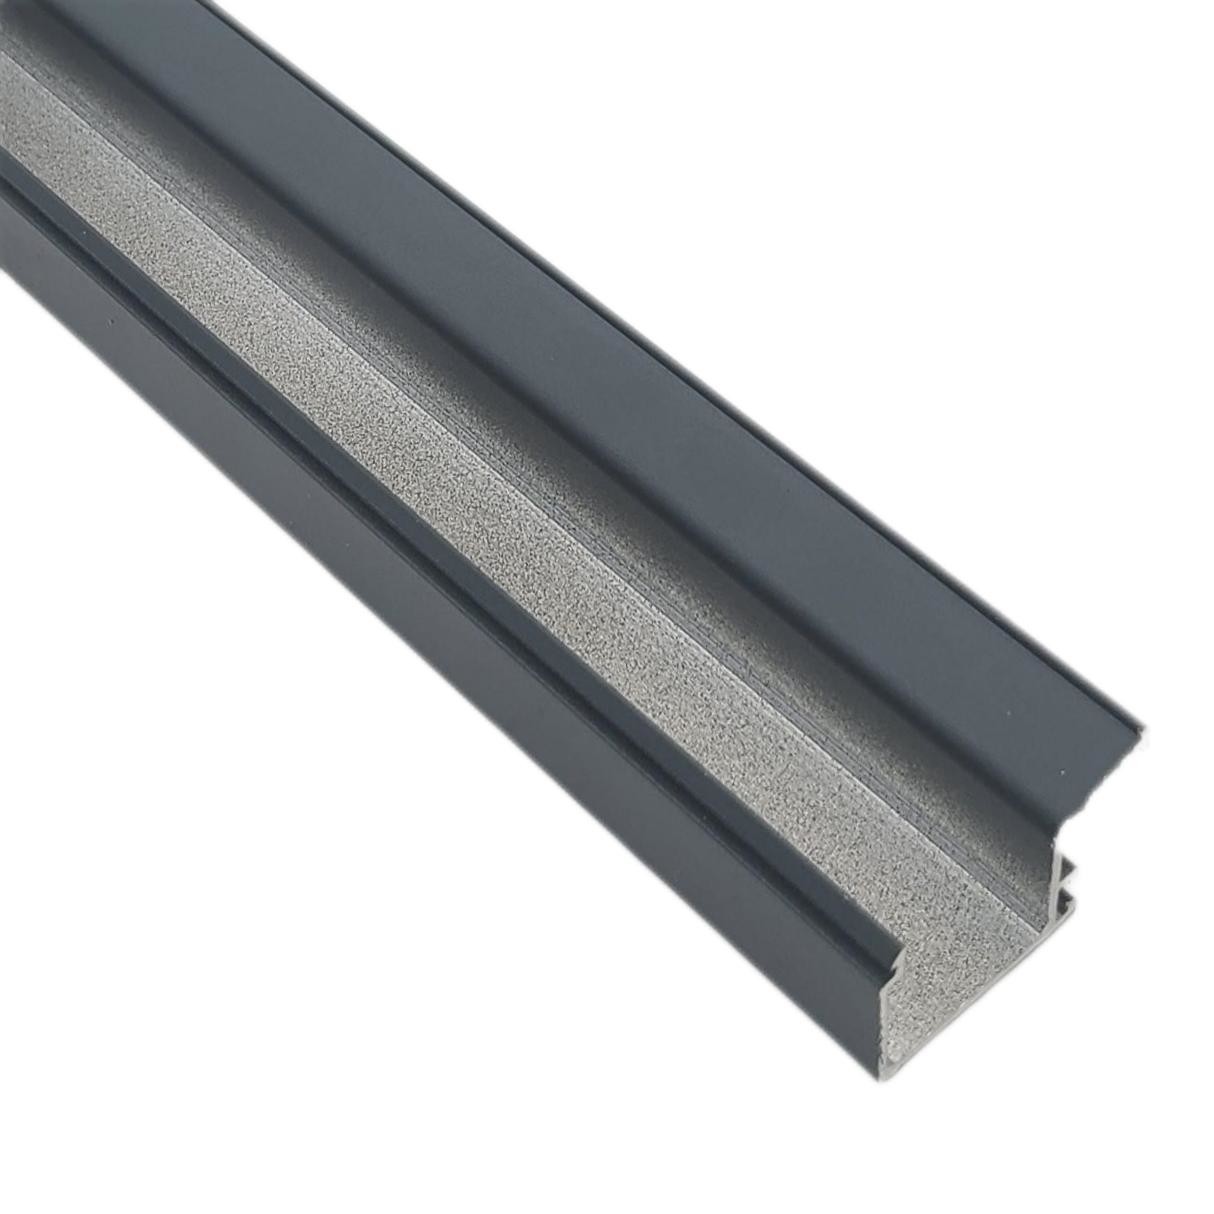 Best Thermal Break Aluminium Profile Cover Extruded Aluminum Window Trim wholesale